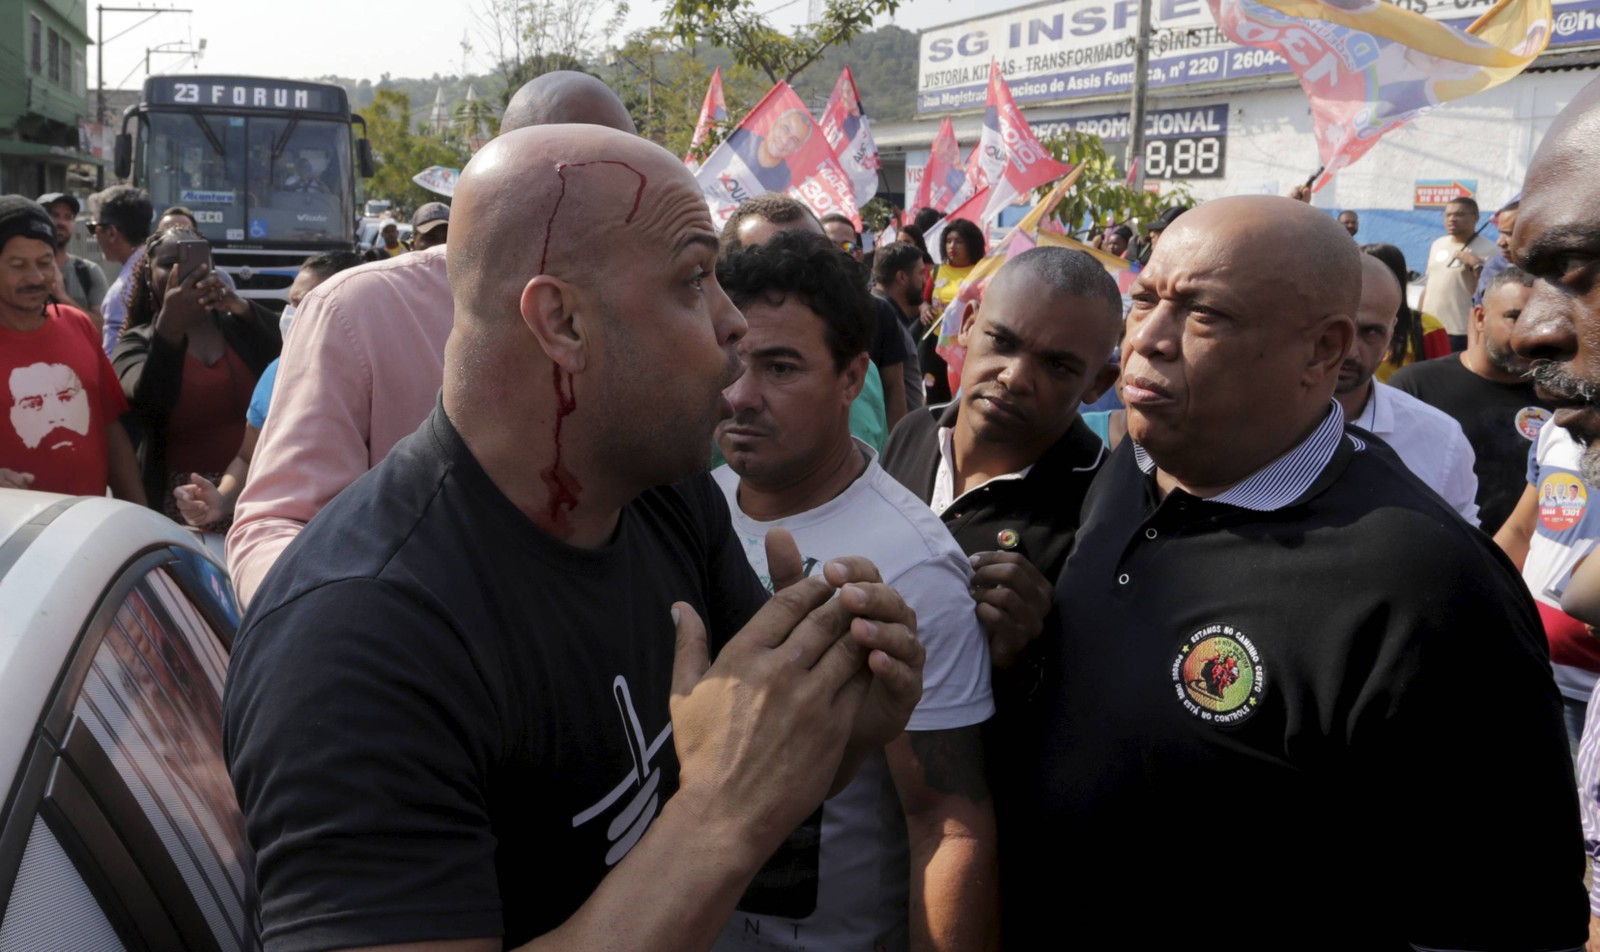 O bolsonarista Rodrigo Duarte ficou ferido na cabeça  — Foto: Domingos Peixoto